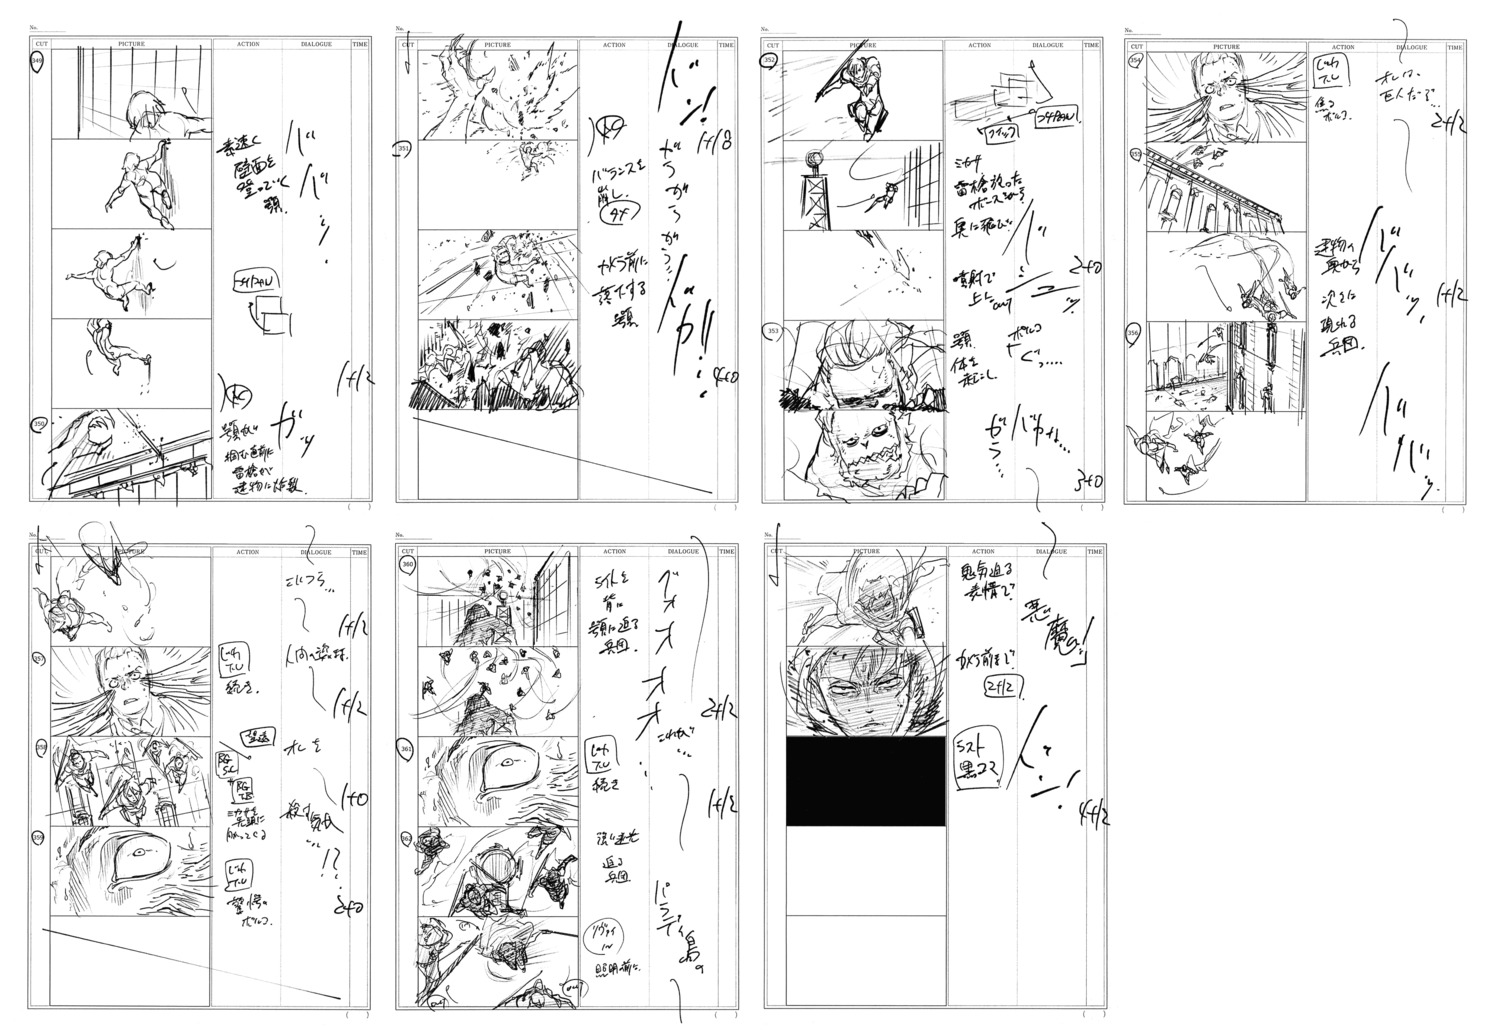 production_materials shingeki_no_kyojin shingeki_no_kyojin_series shingeki_no_kyojin_the_final_season storyboard yuichiro_hayashi